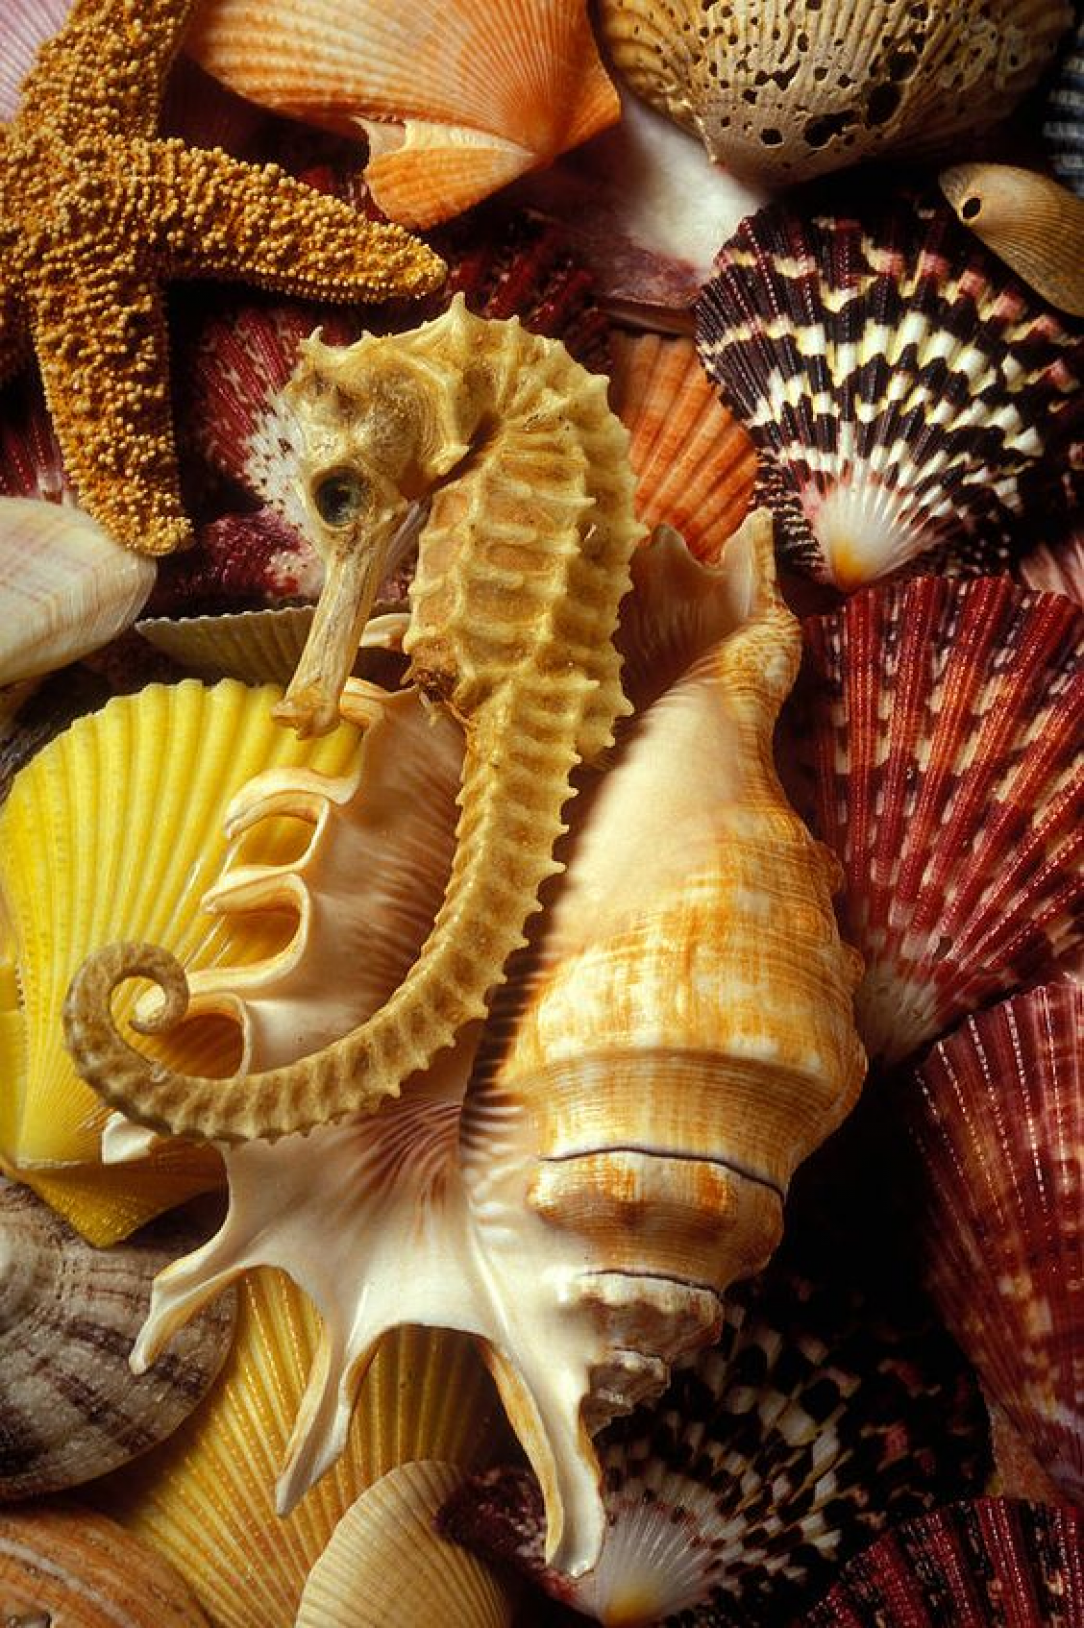 Seahorse among sea shells